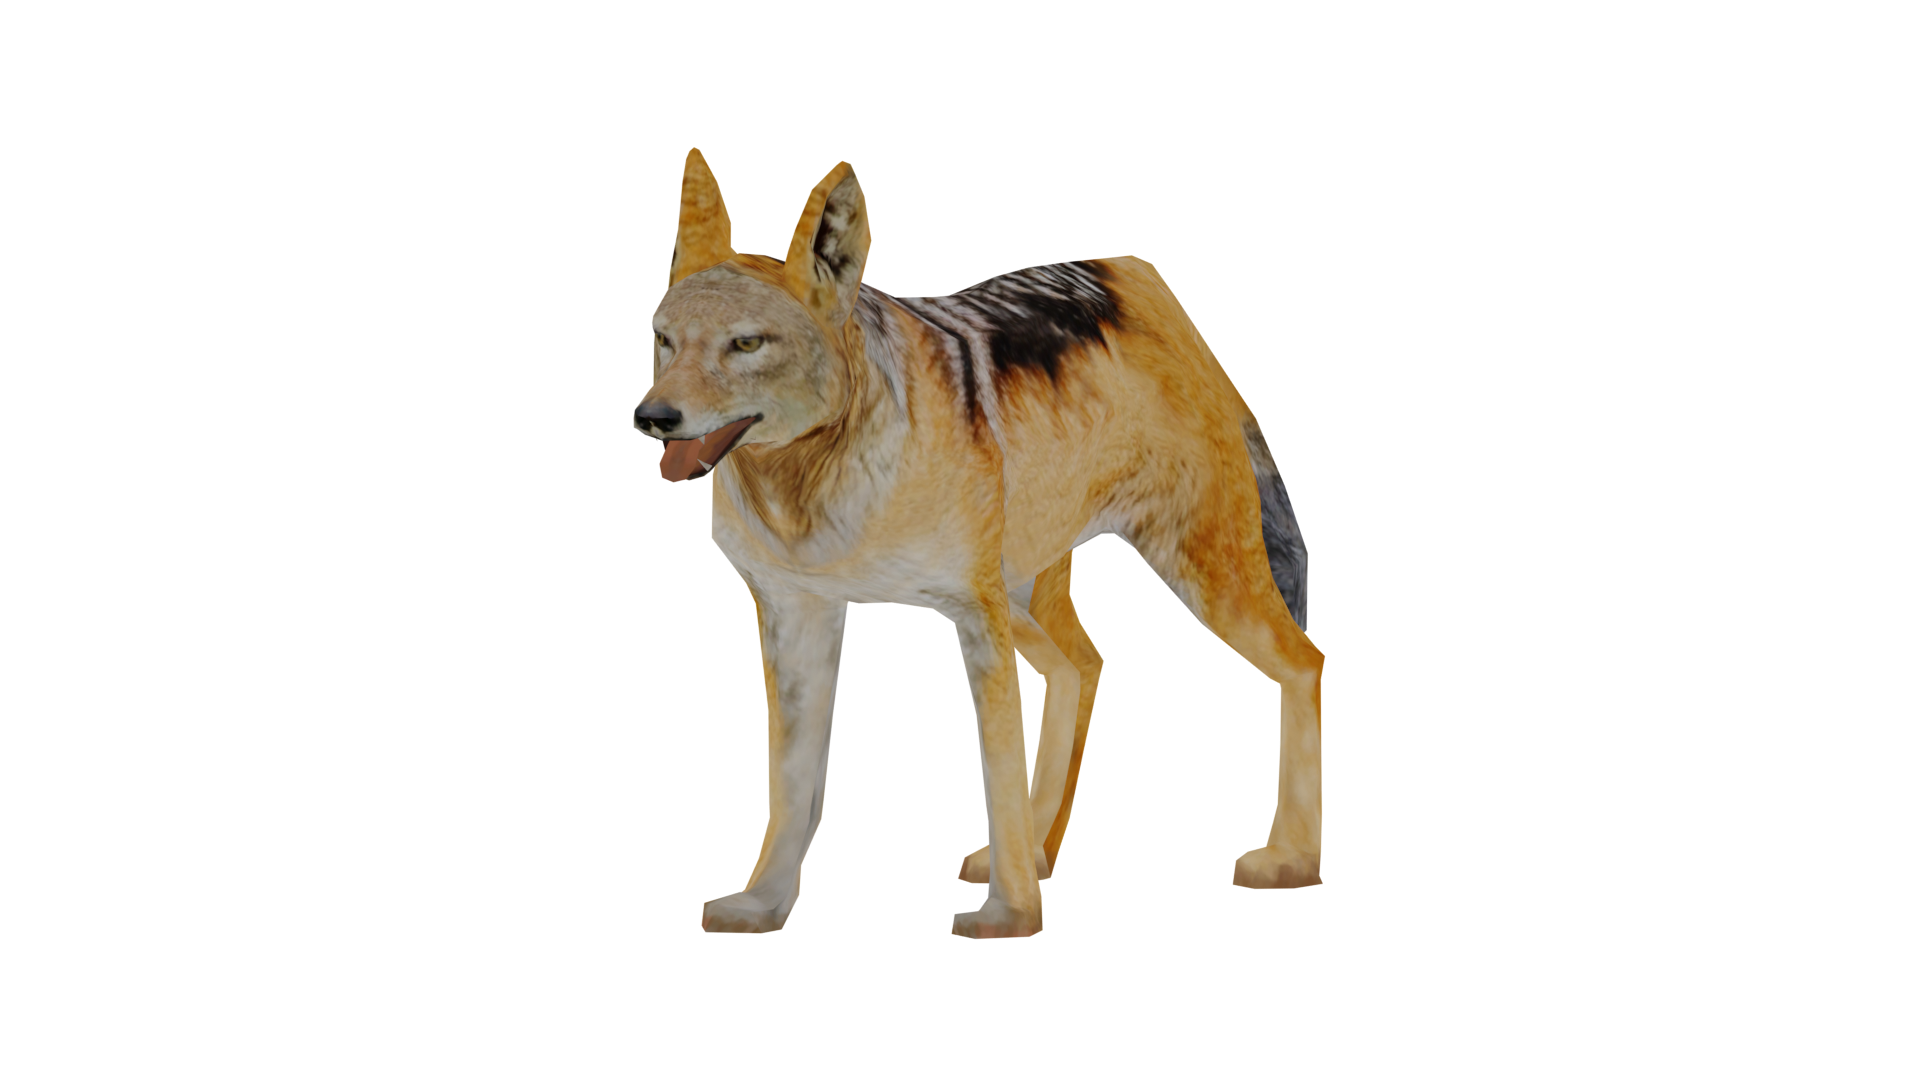 Dingo, Wildlife Park 2 Wiki